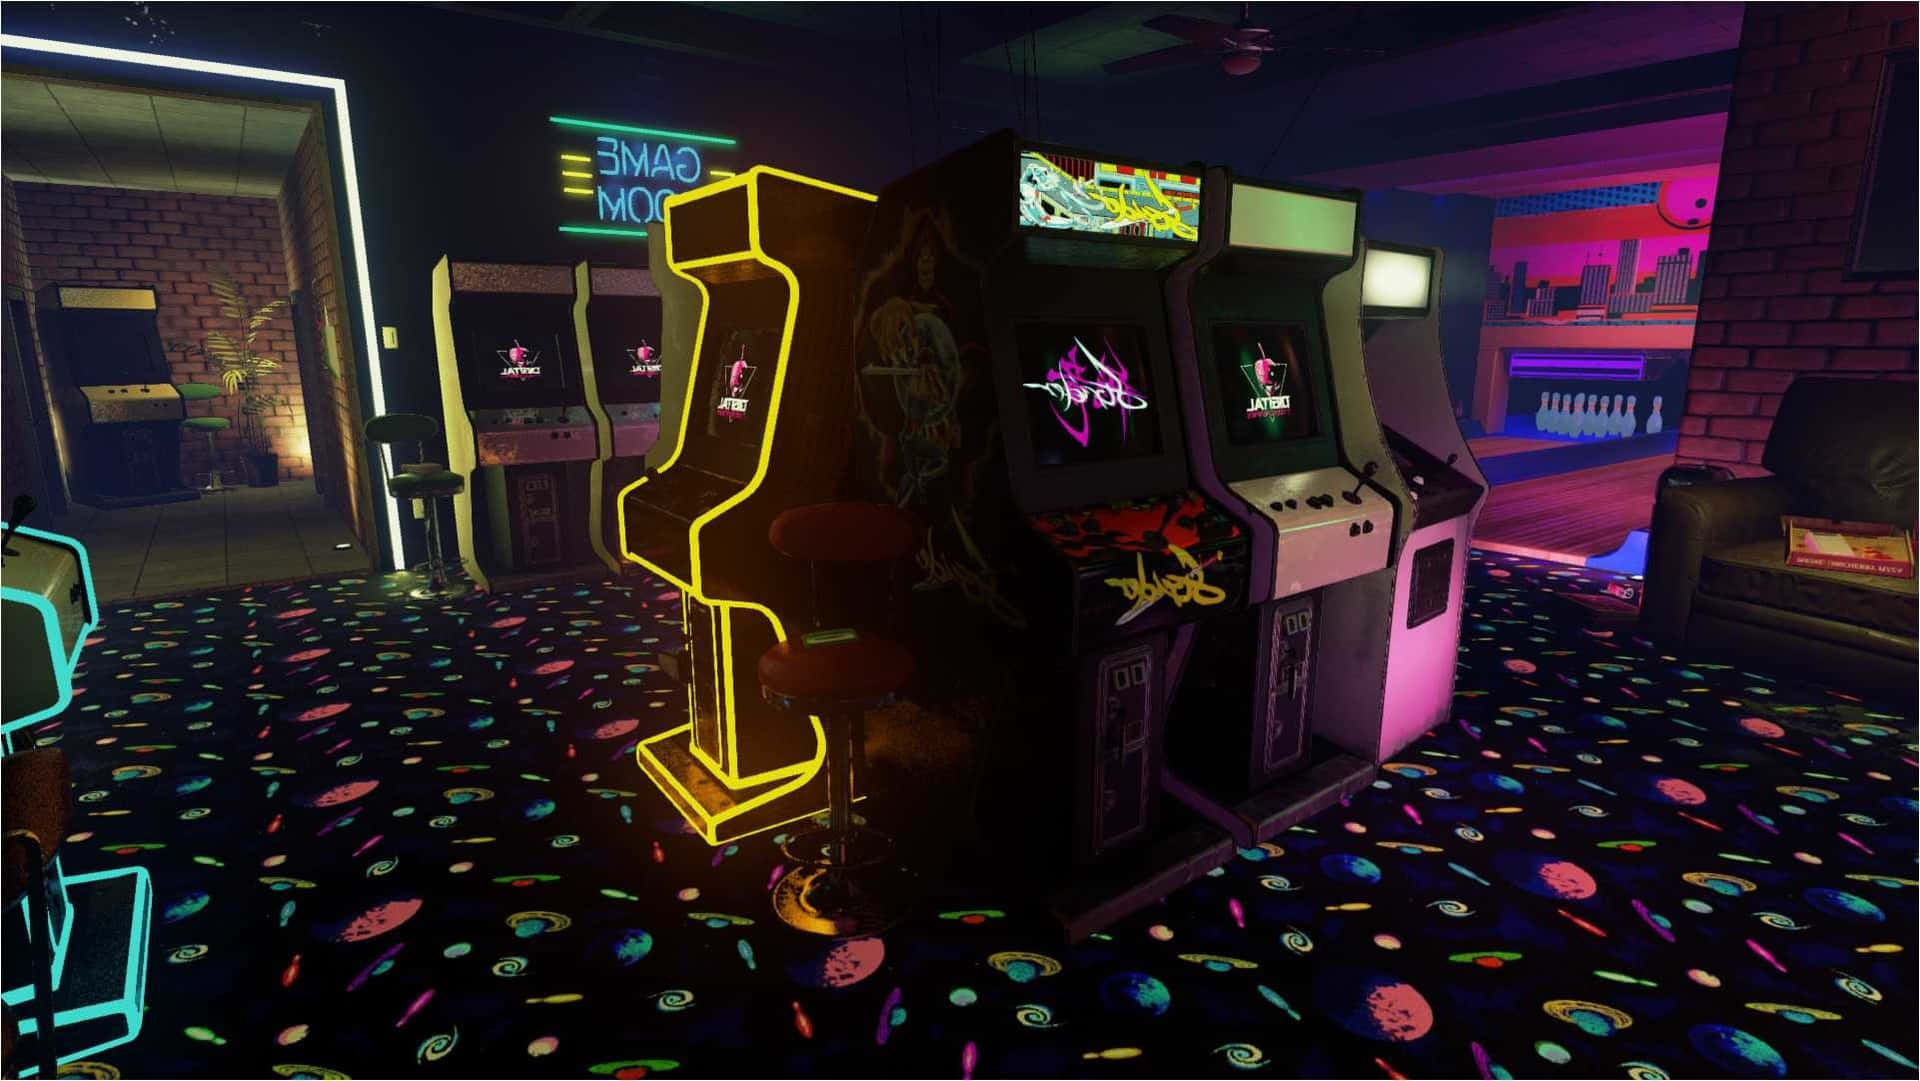 Unavisione Emozionante Di Nostalgia, Questo Bar Arcade Retrò Degli Anni '80 Offre L'esperienza Perfetta Per Rivivere Il Passato. Sfondo